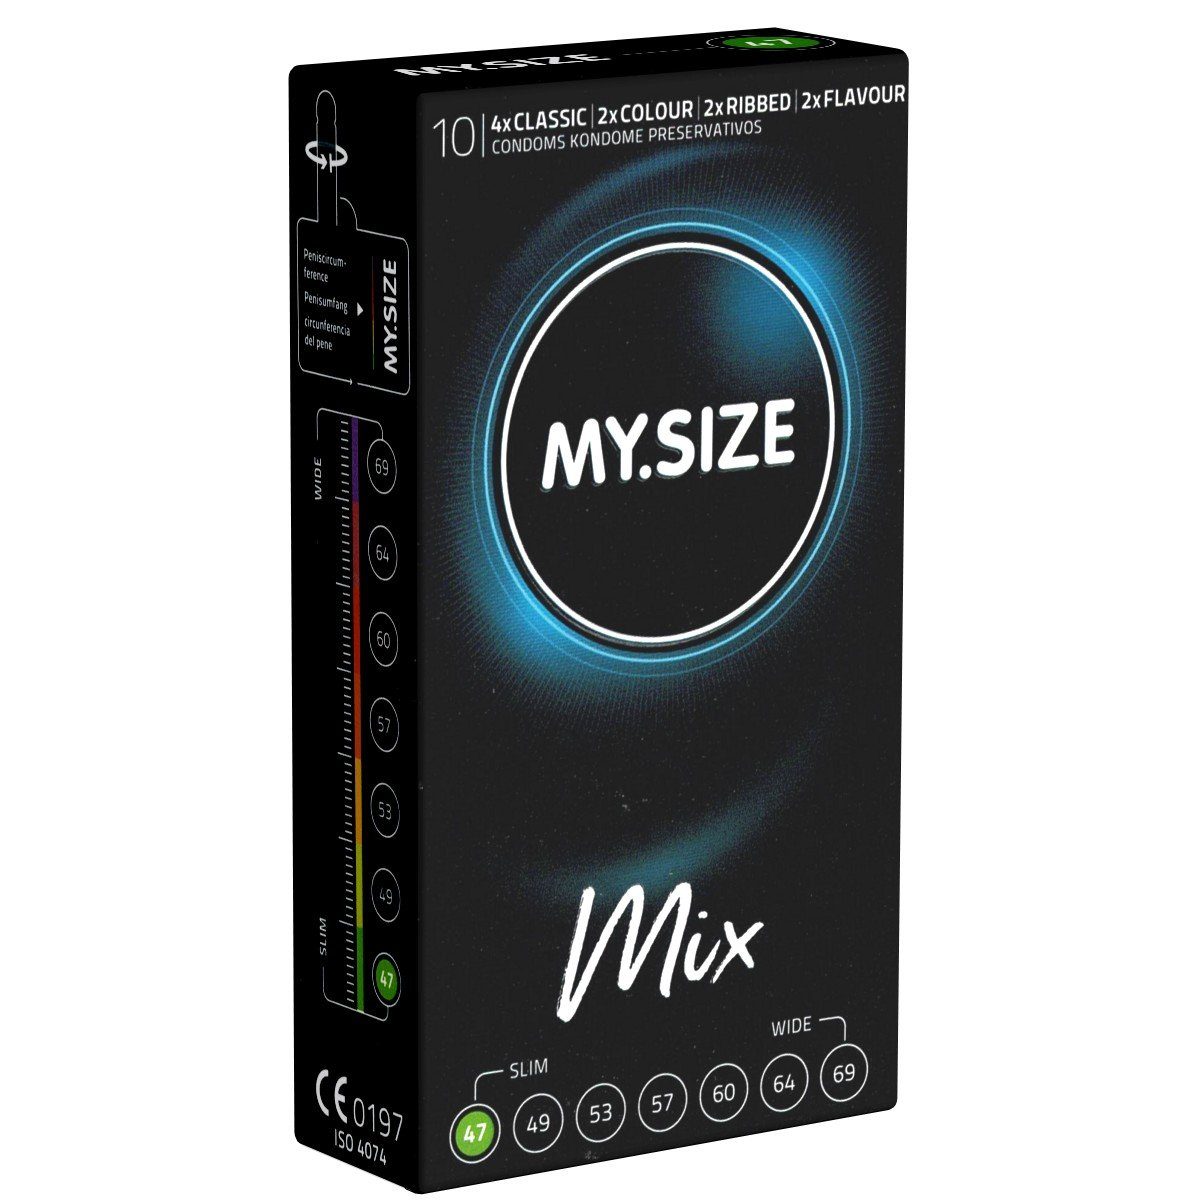 MY.SIZE Kondome Classic 47 MIX Packung mit, 10 St., im gemischten Sortiment, Kondome für besten Tragekomfort und Sicherheit